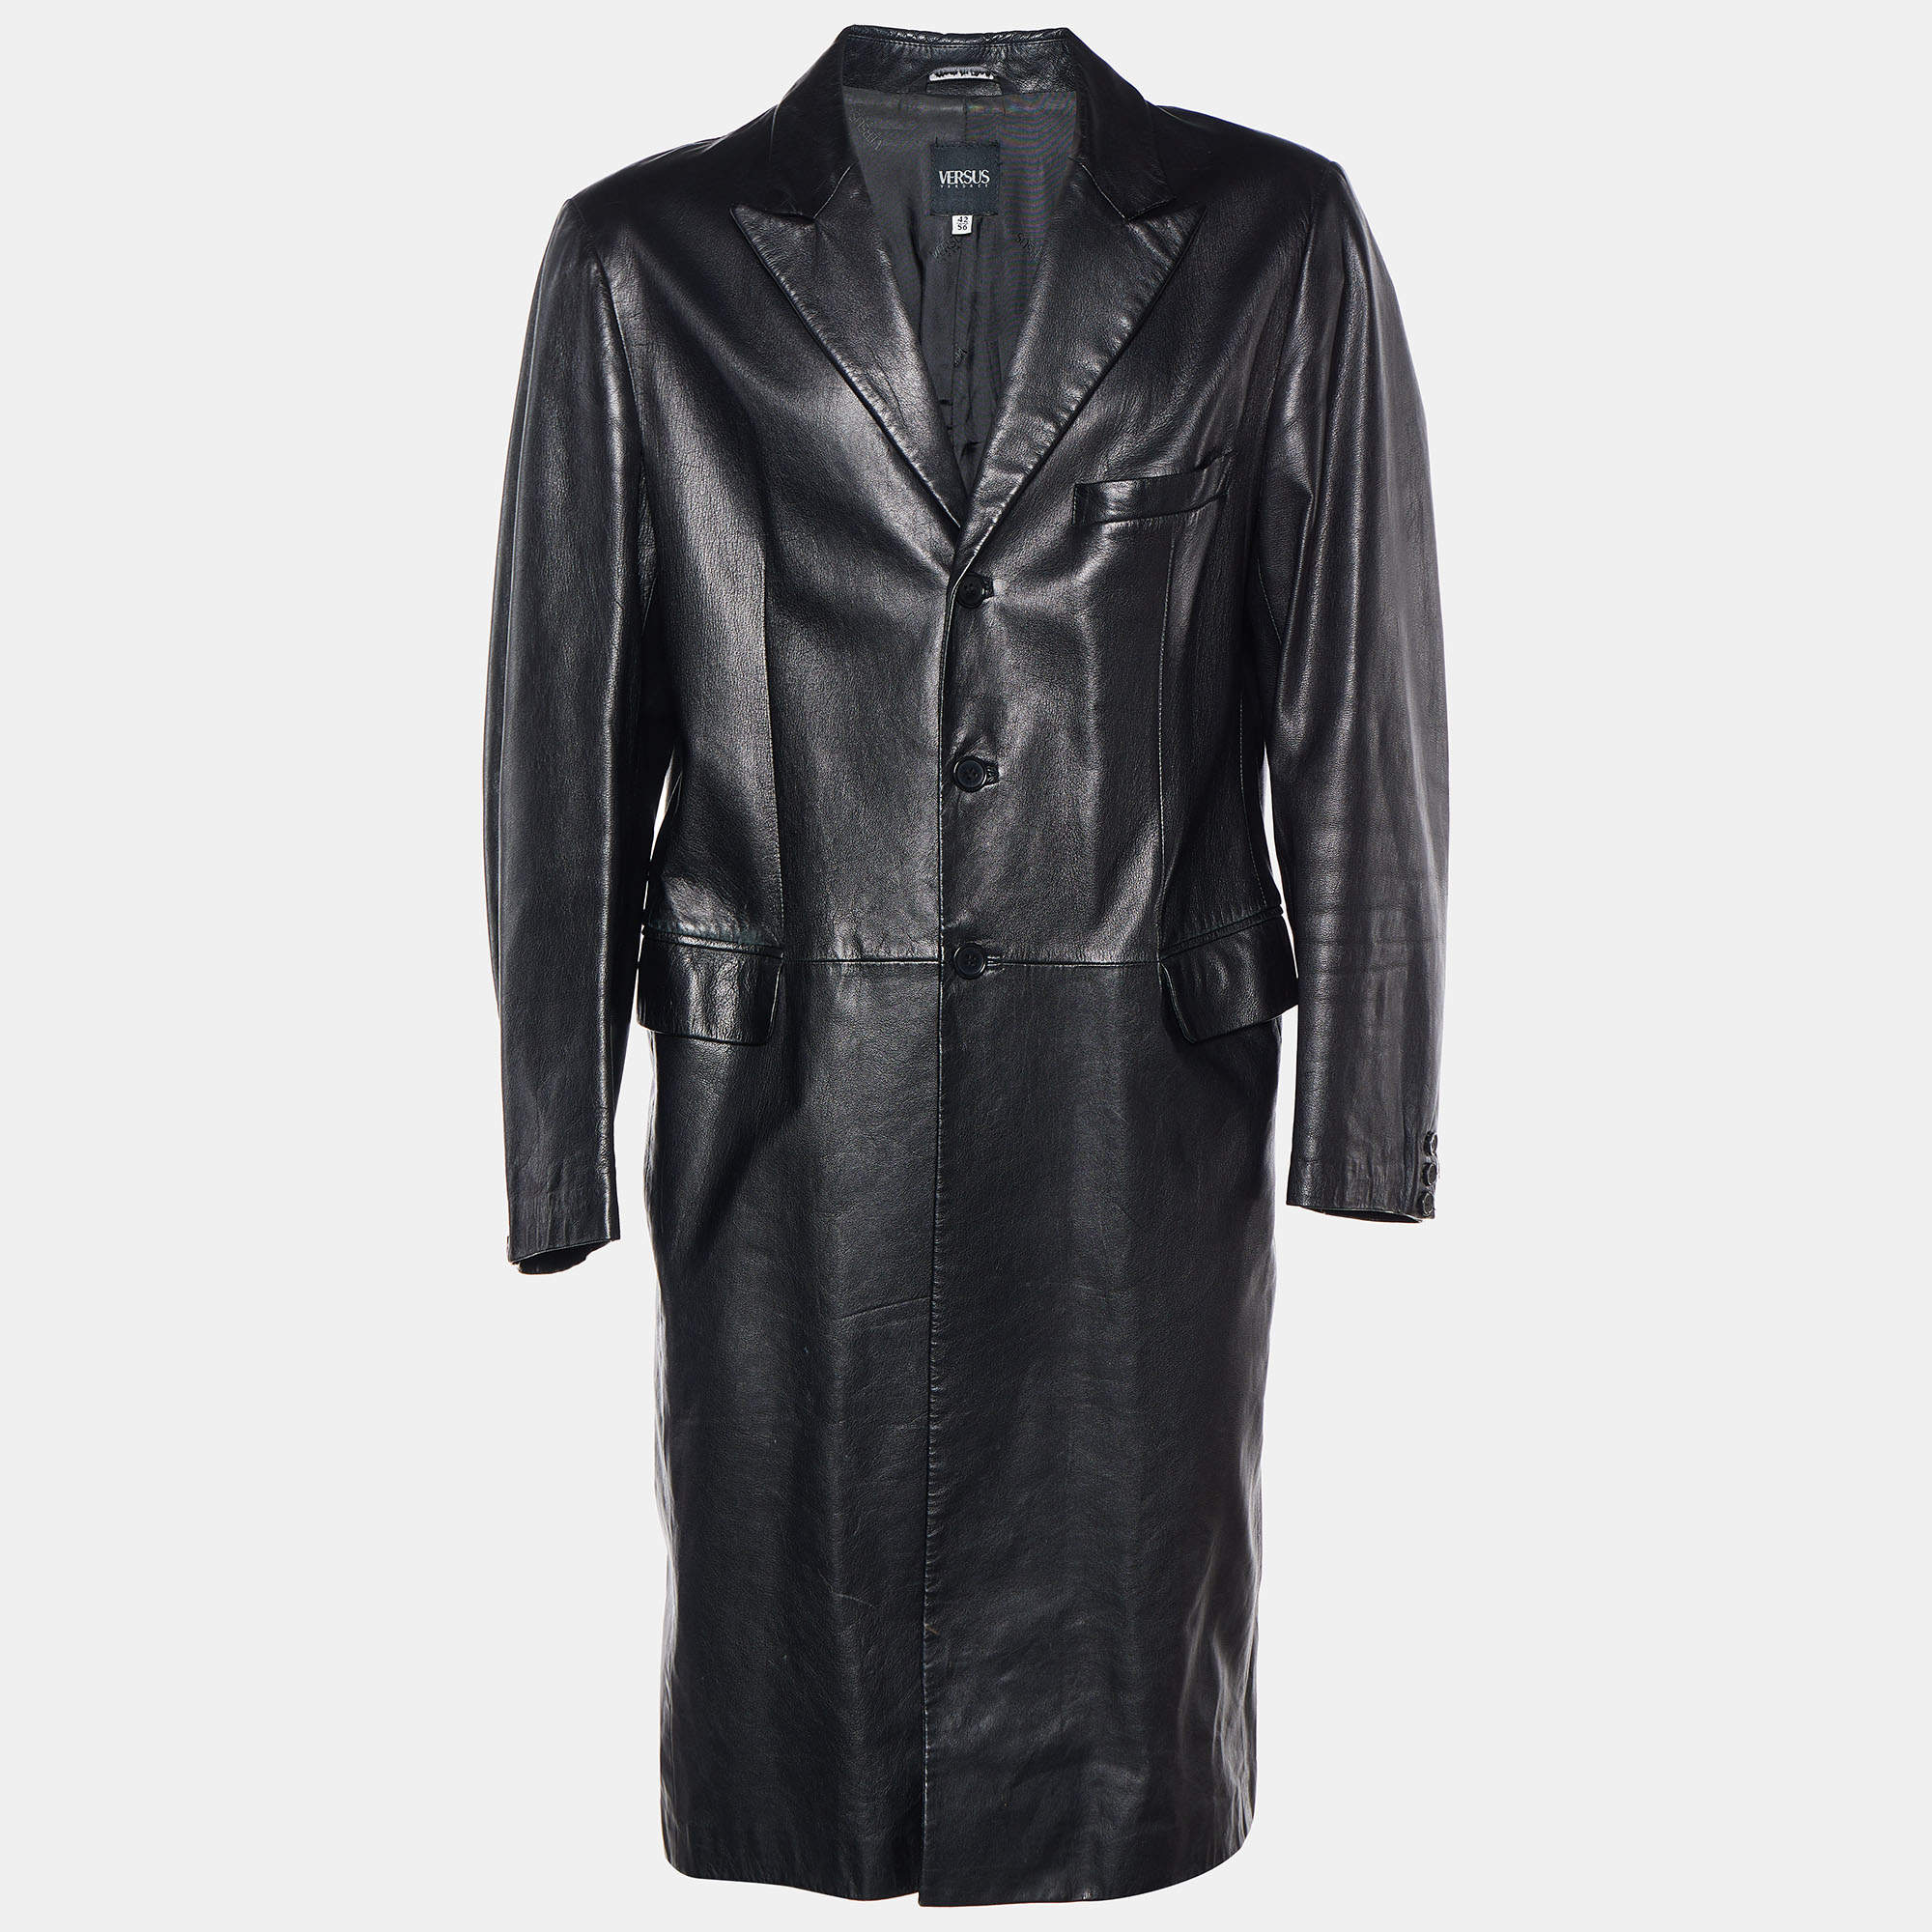 Versus Versace Black Leather Button Front Long Coat 3XL